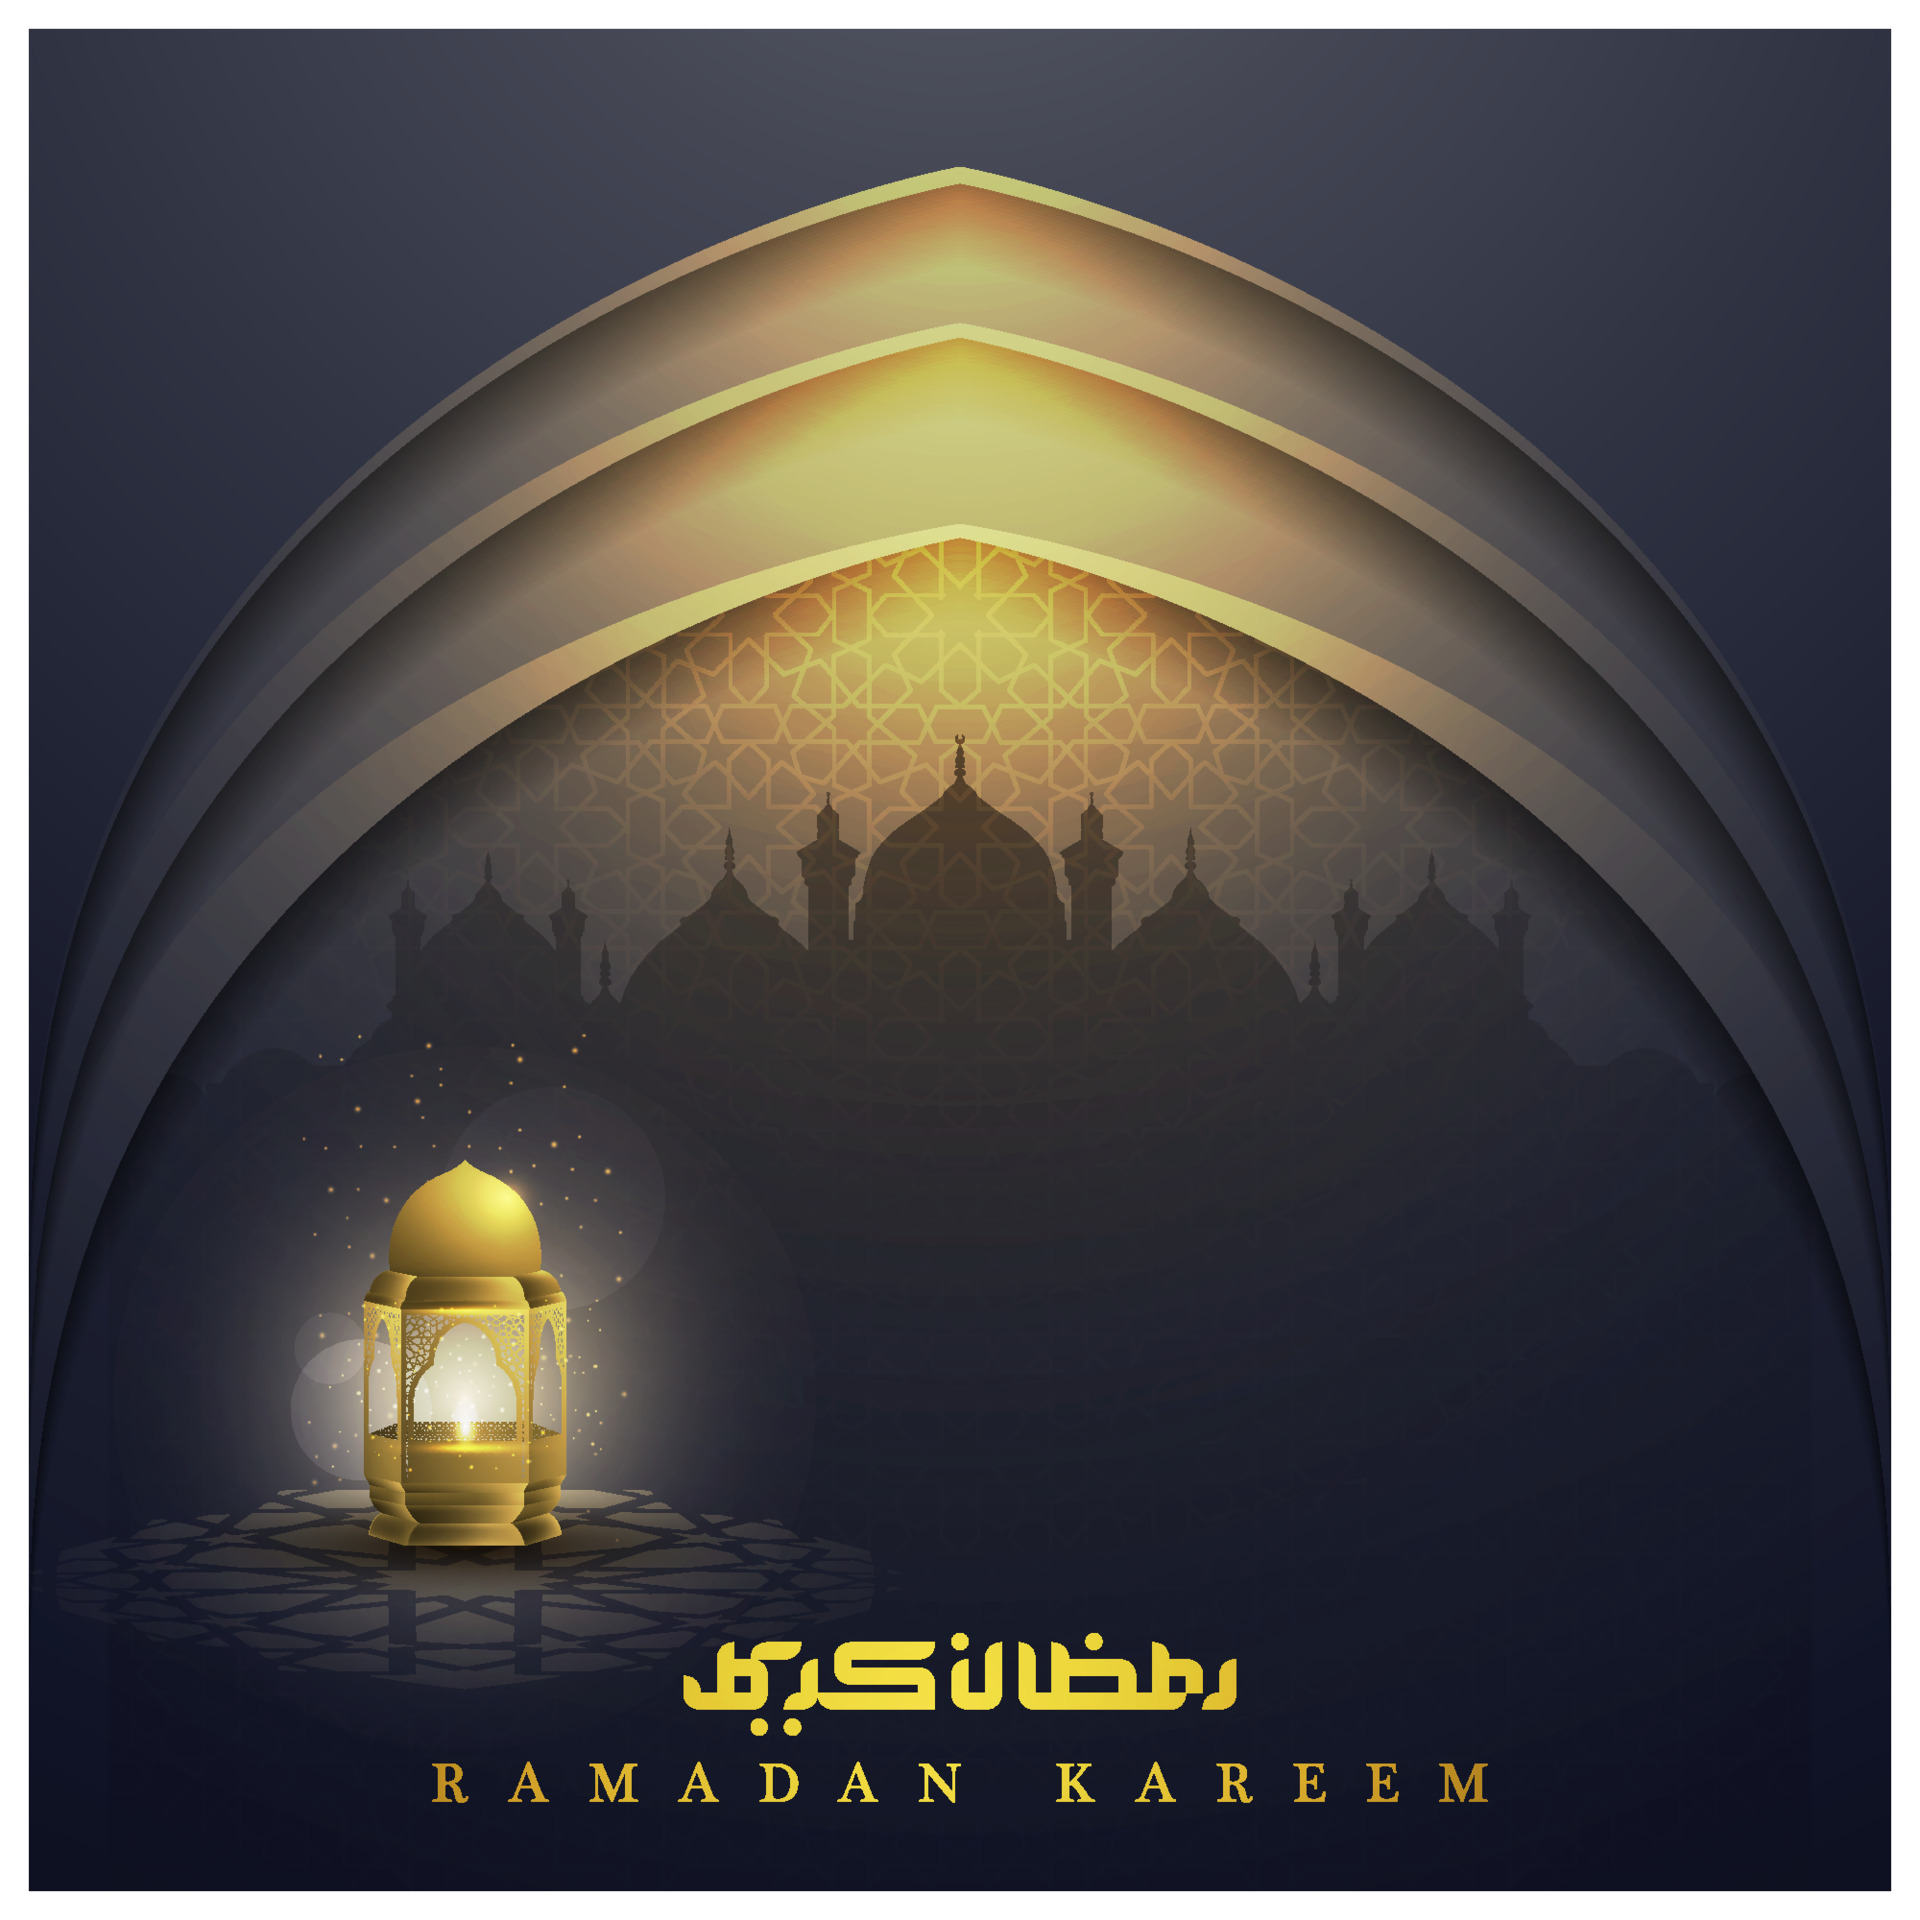 Chúc mừng Ramadan Kareem với những tấm thẻ chúc mừng phong cách Hồi giáo. Sử dụng phông nền hình ảnh đẹp và ấn tượng, bạn sẽ có những lời chúc tốt đẹp nhất dành cho người thân trong mùa Ramadan này. Hãy tìm thấy những ý tưởng thiết kế thật sáng tạo và tình cảm, để gửi đến những người thân yêu của bạn đã liên kết trong kinh nghiệm tuyệt vời này.